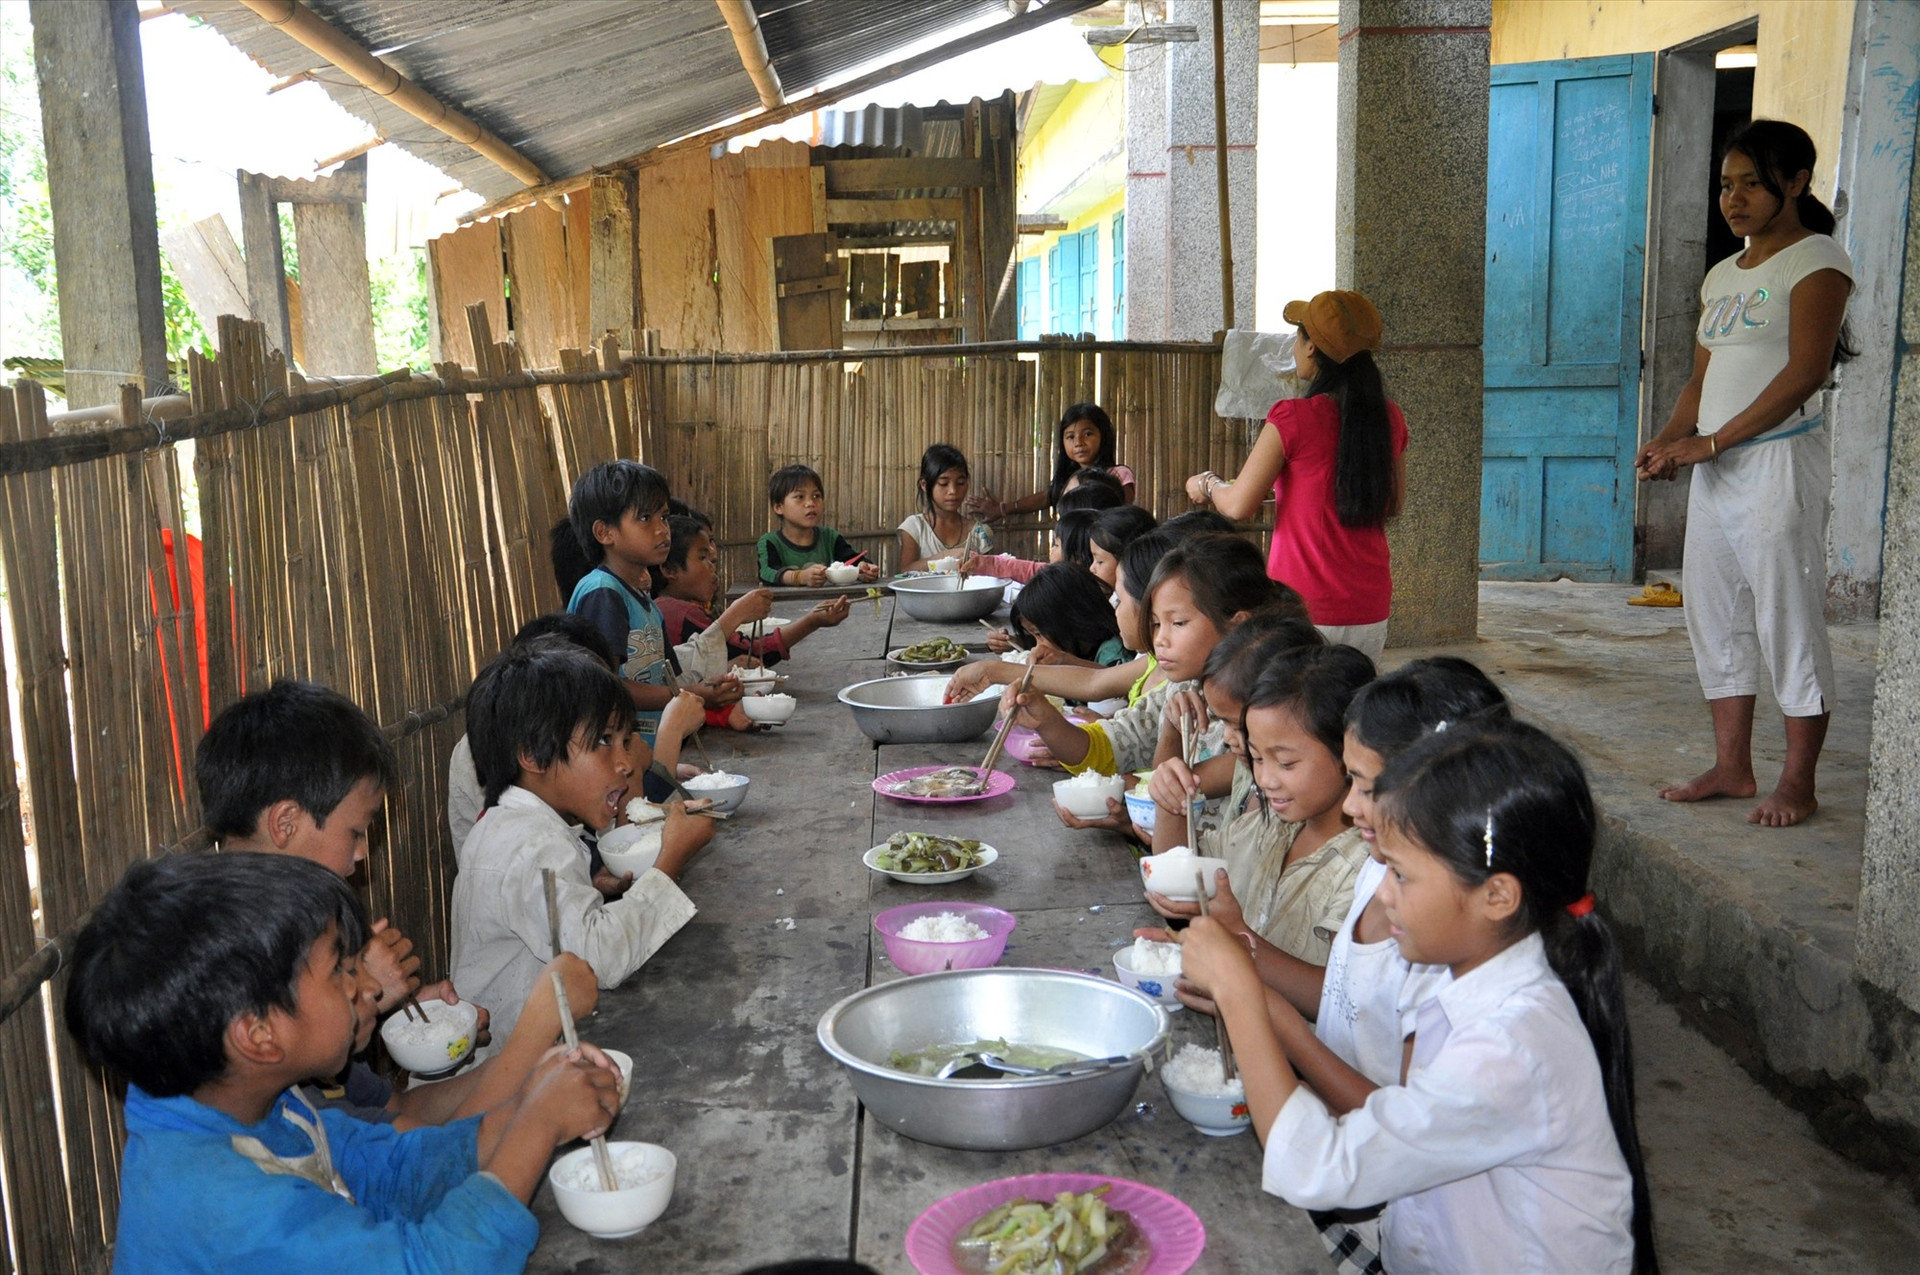 Tăng mức hỗ trợ cho các trường có tổ chức nấu ăn cho trẻ em, học sinh vùng khó khăn là cần thiết. Ảnh: X.P